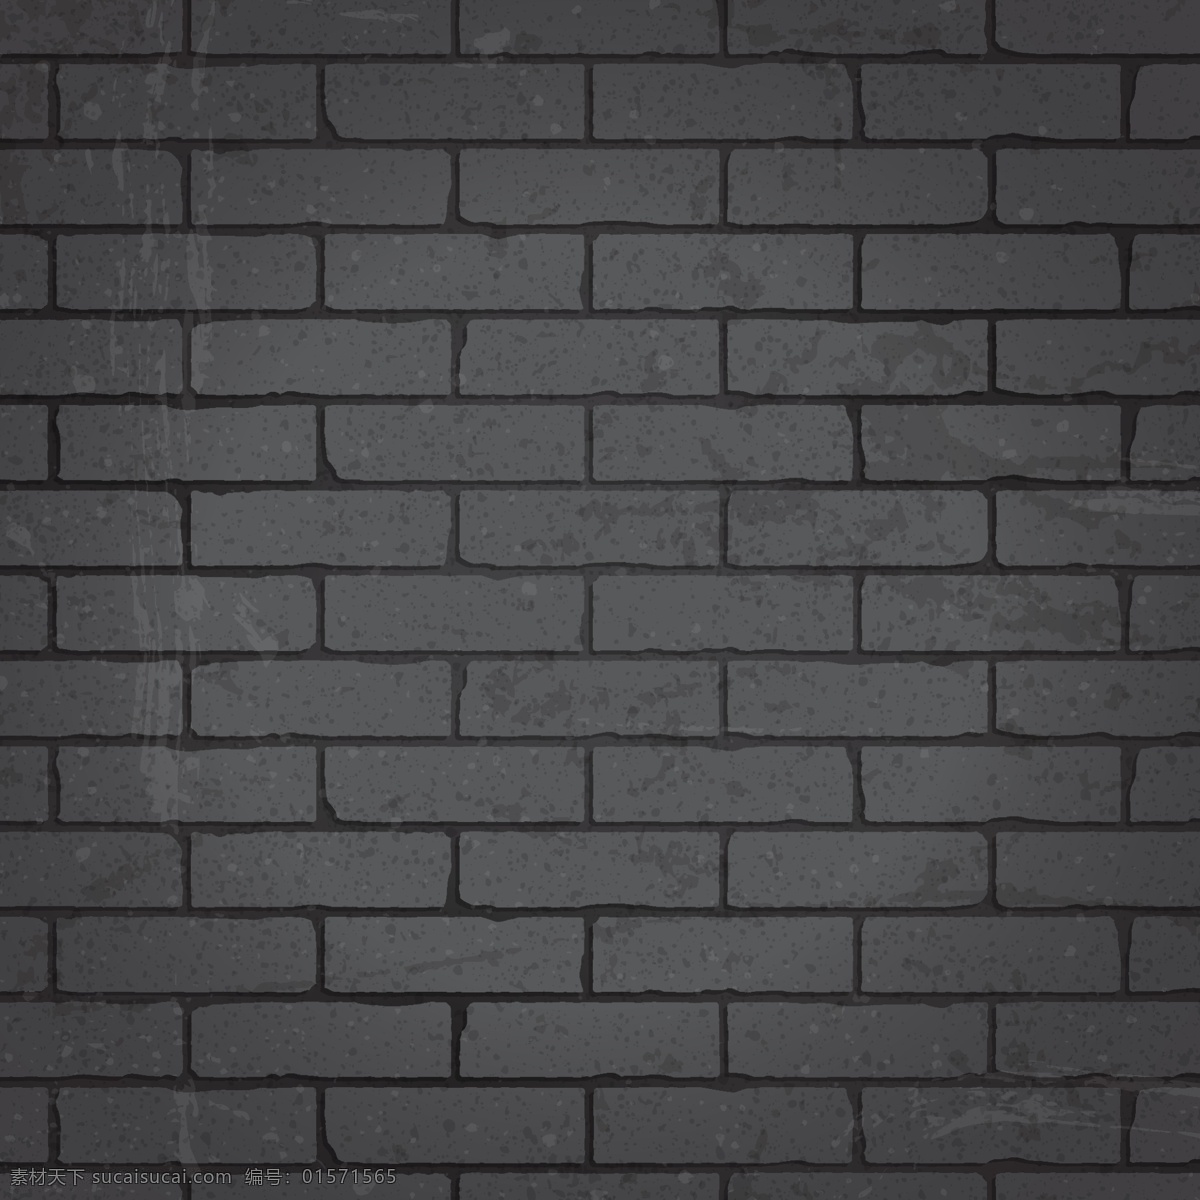 灰色砖墙背景 灰色砖墙 砖墙摄影 砖墙背景 砖块 底纹背景 底纹图 底纹边框 矢量素材 灰色